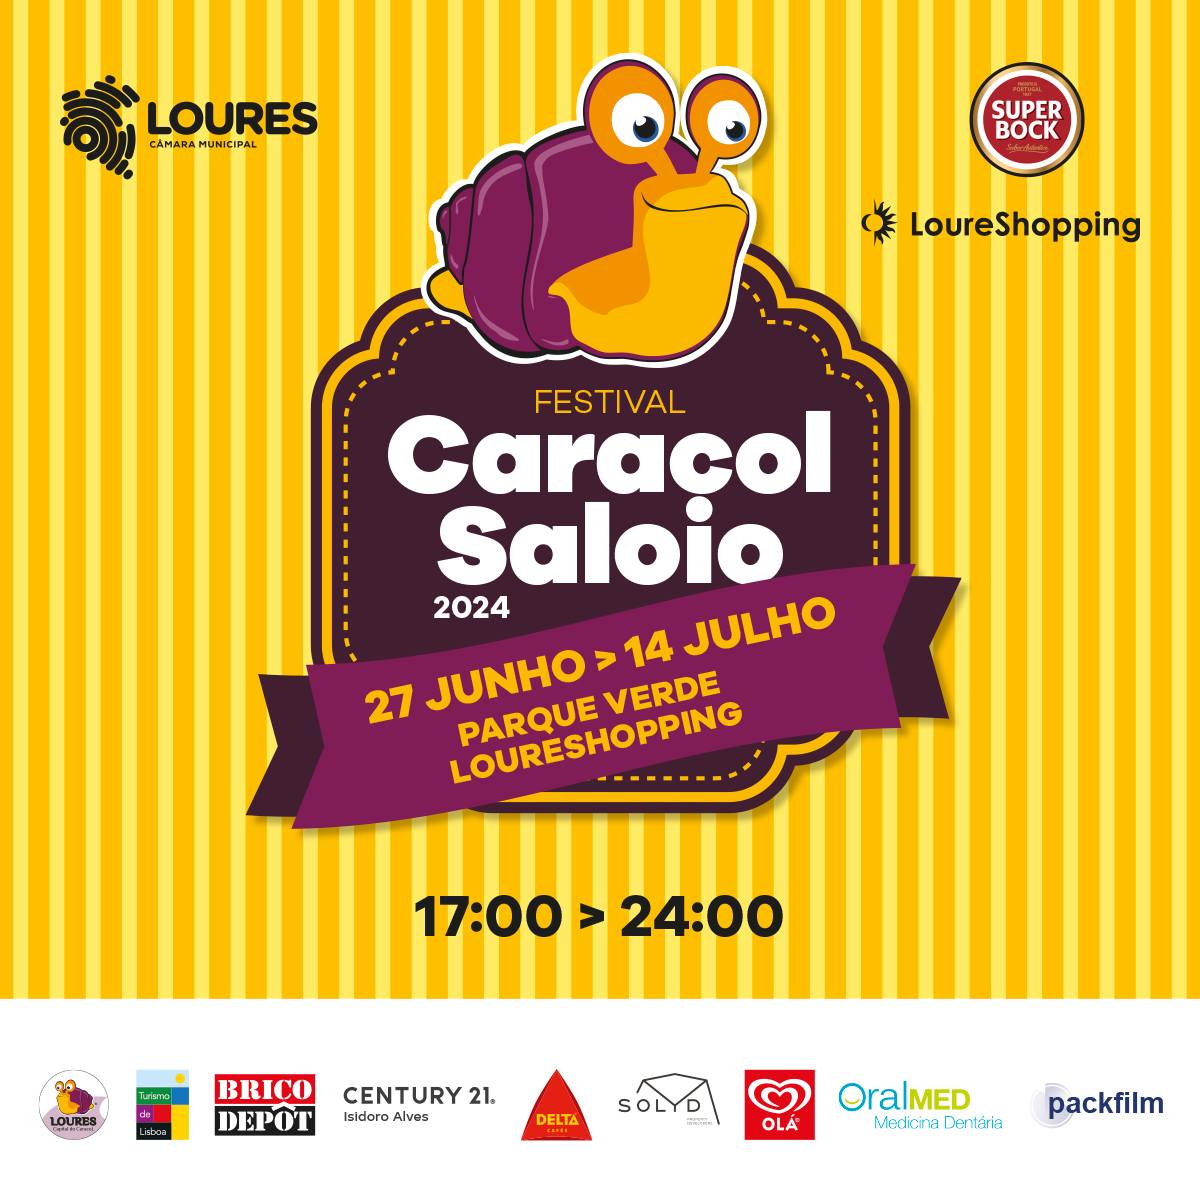 FESTIVAL CARACOL SALOIO 2024 | LOURES